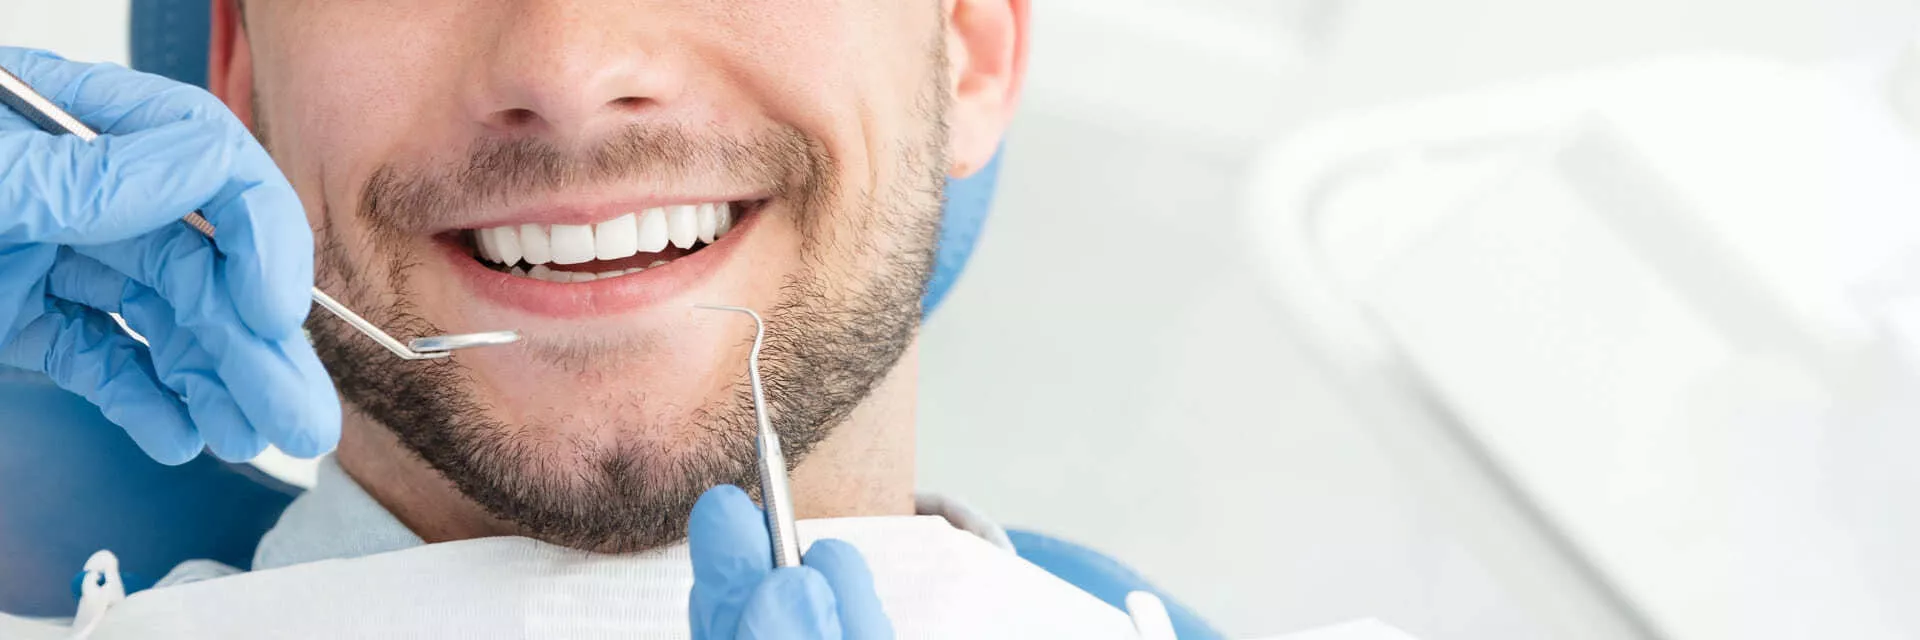 Dişleri Korumada Yapılan 6 Yanlış Uygulama